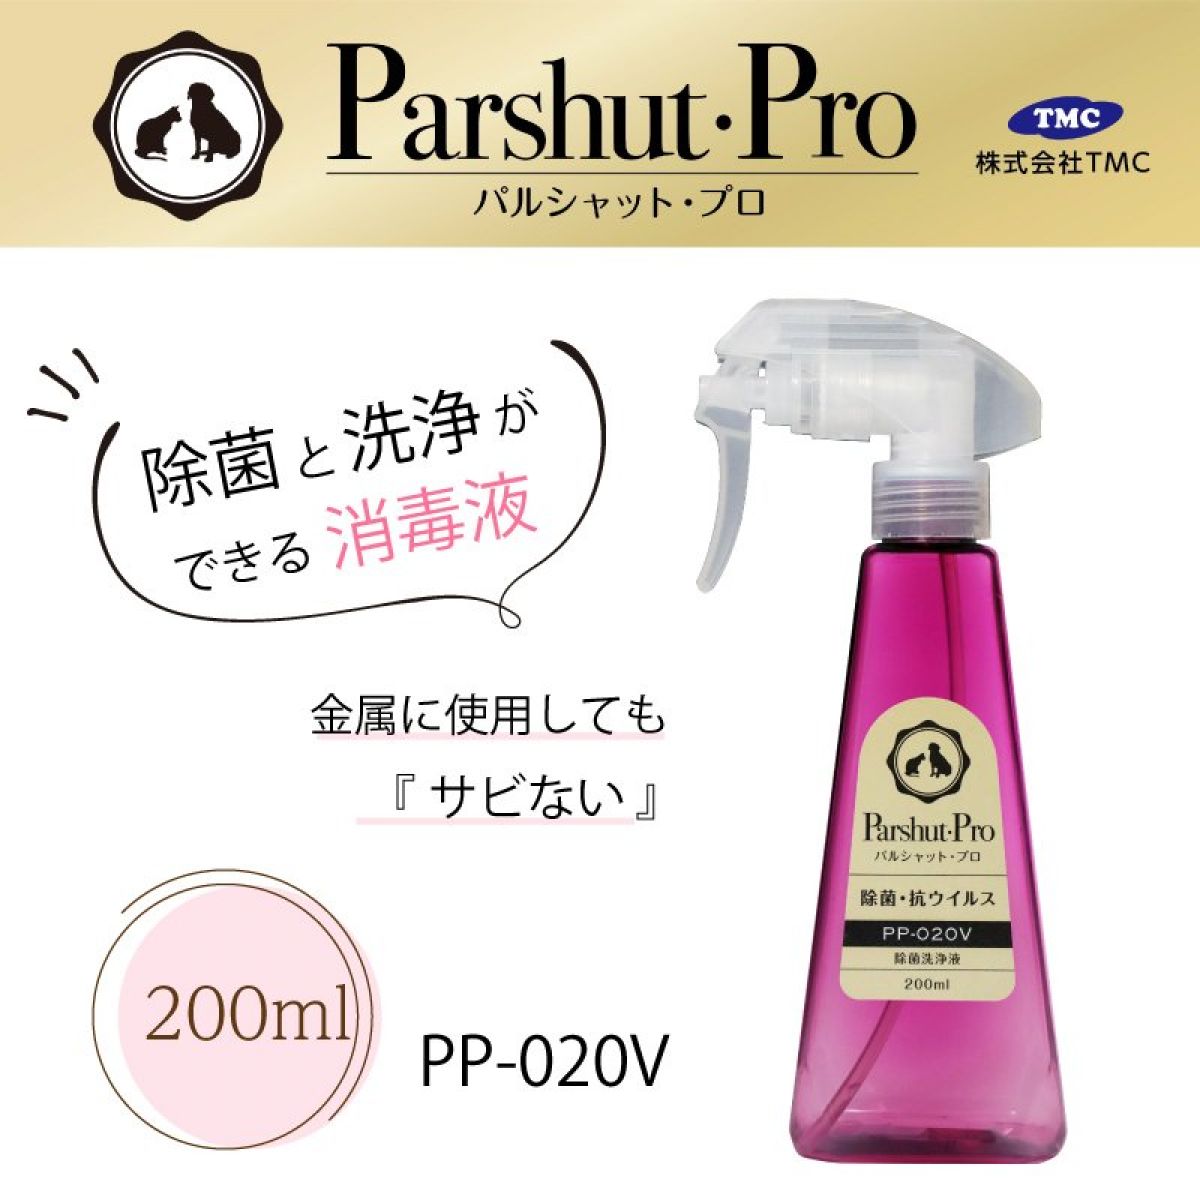 パルシャット・プロ  PP-020V  200ml  除菌洗浄液